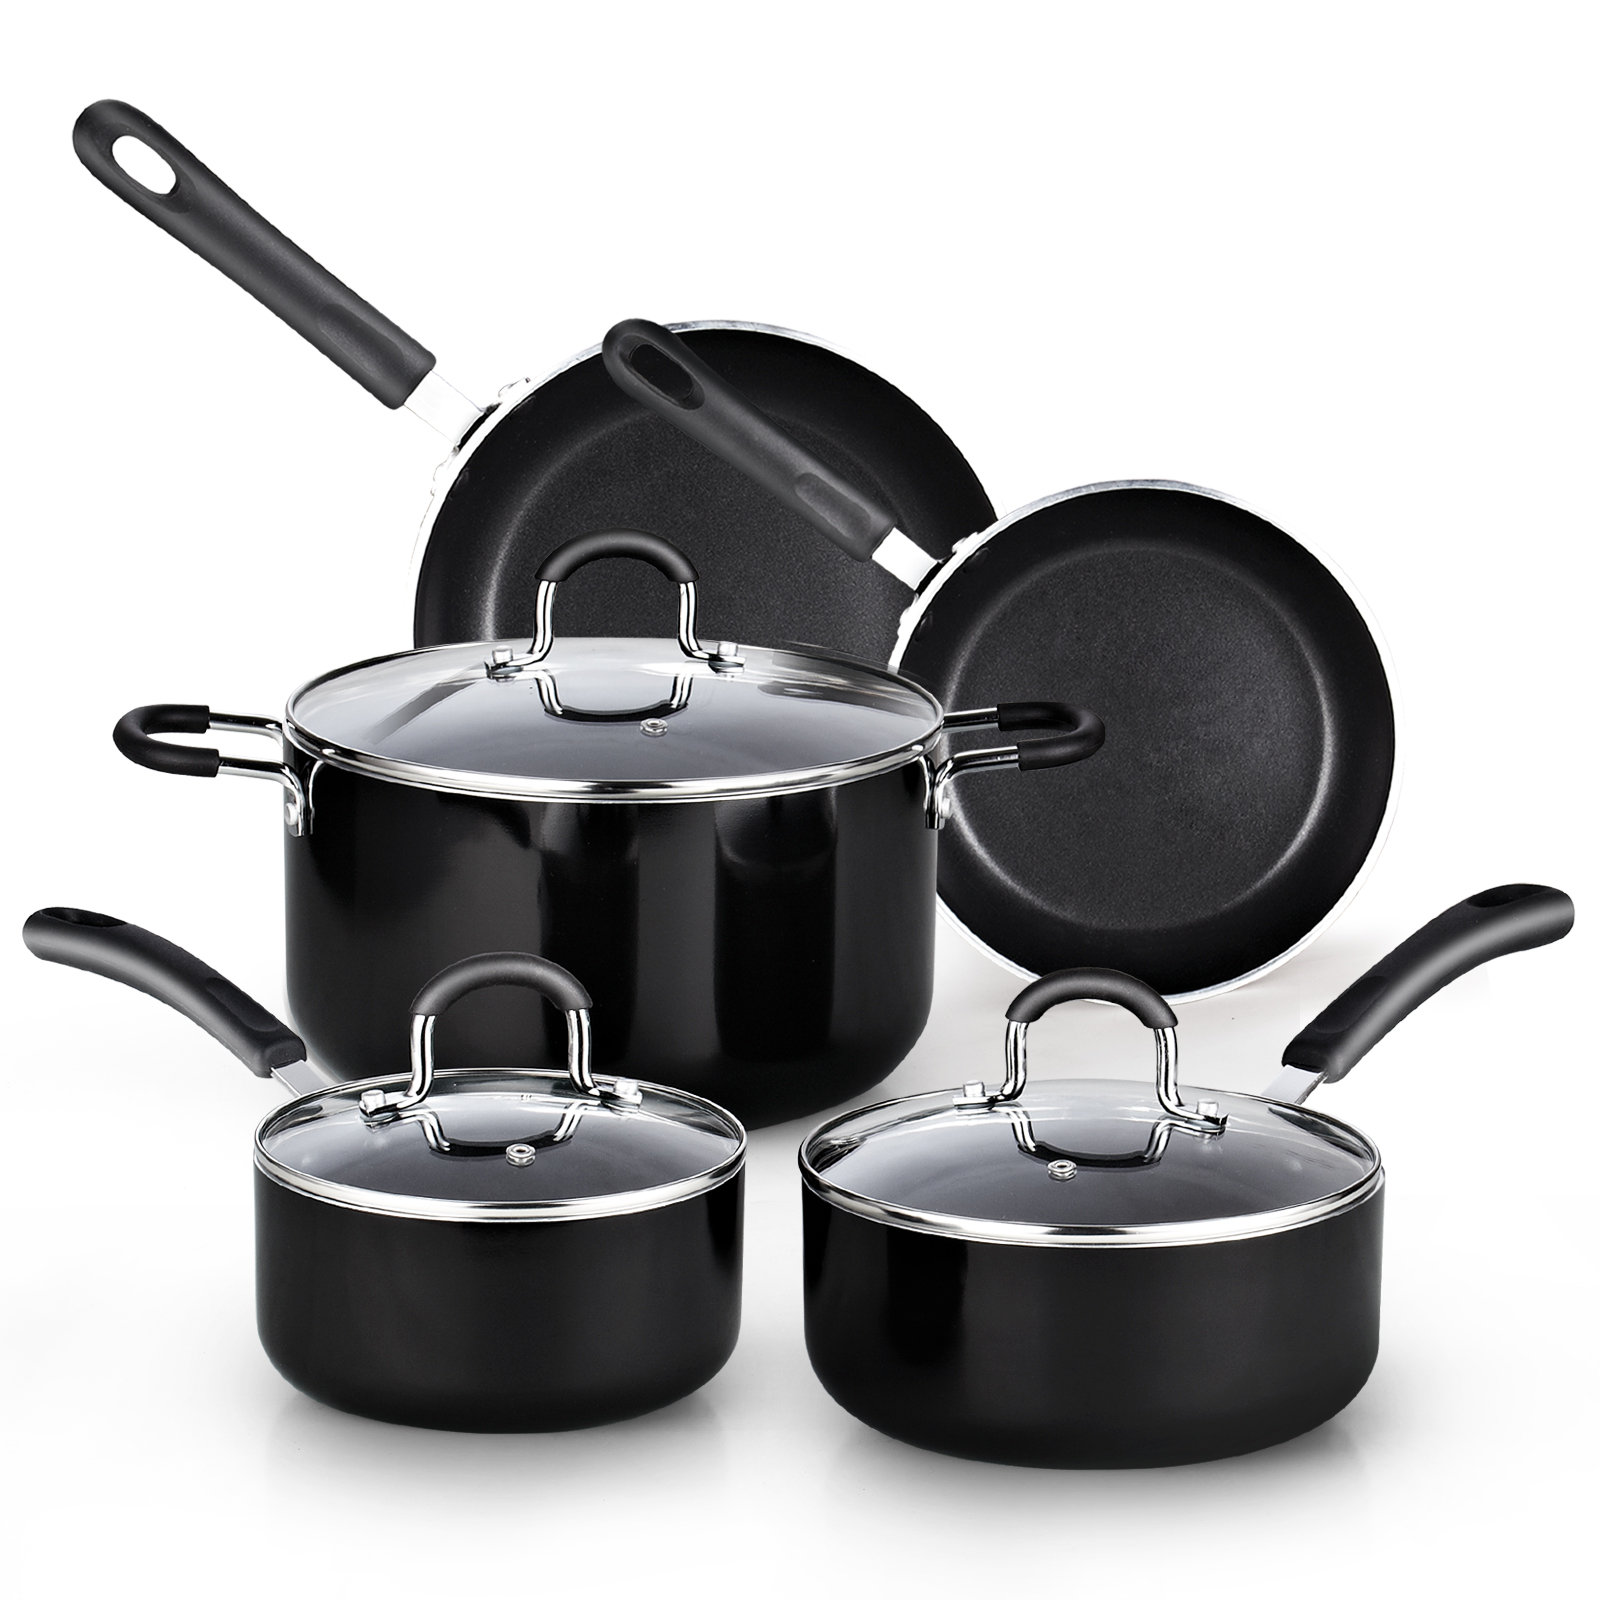 https://assets.wfcdn.com/im/62433263/compr-r85/2599/259975088/cook-n-home-8-piece-nonstick-pots-and-pans-heavy-gauge-kitchen-cookware-set.jpg